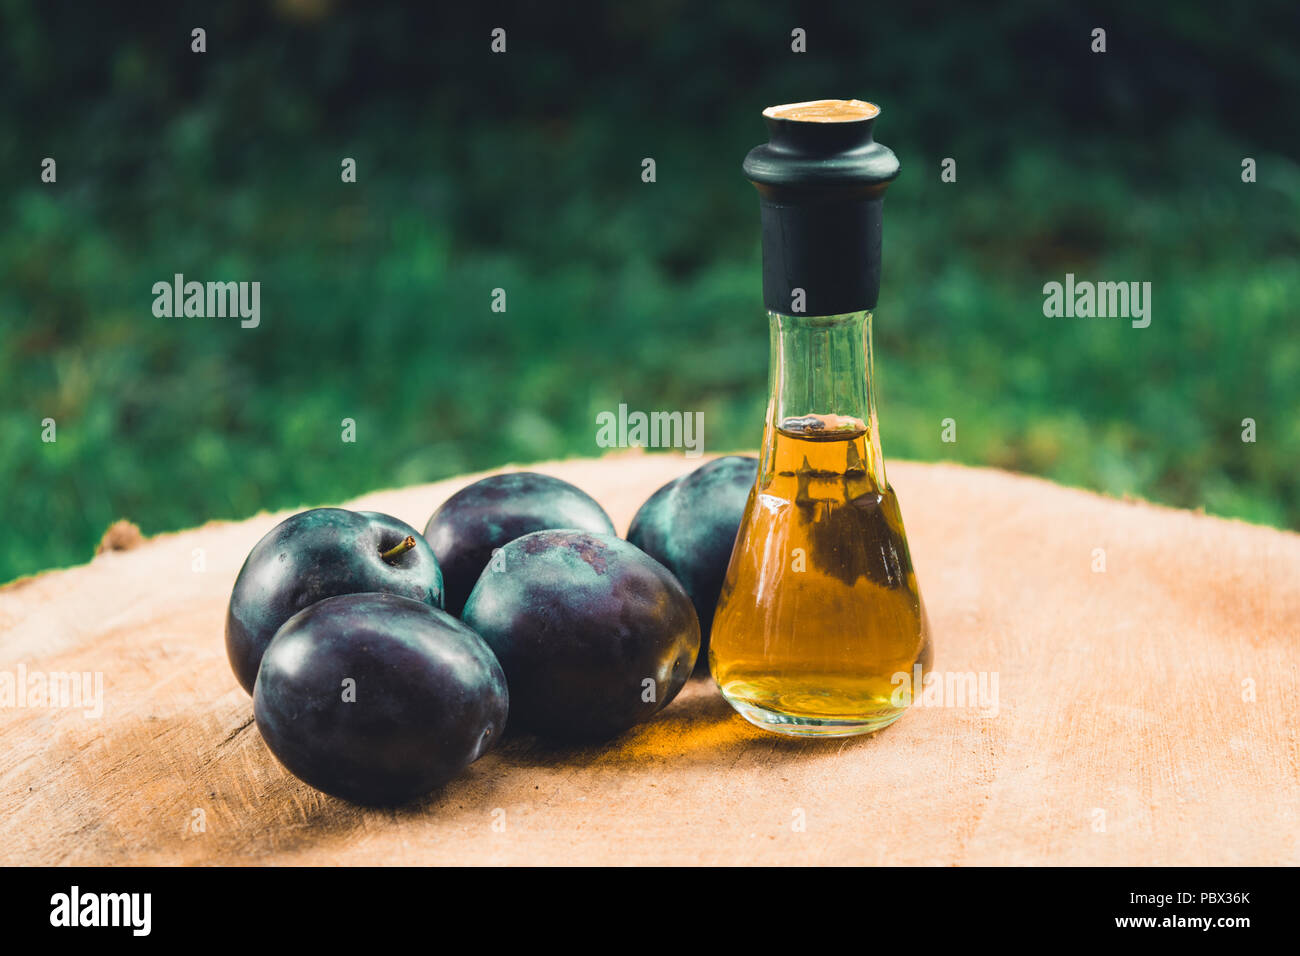 Eau-de-vie de prune (Slivovitz) en serbe traditionnel verre bouteille avec les prunes mûres fraîches sur une surface en bois. Banque D'Images